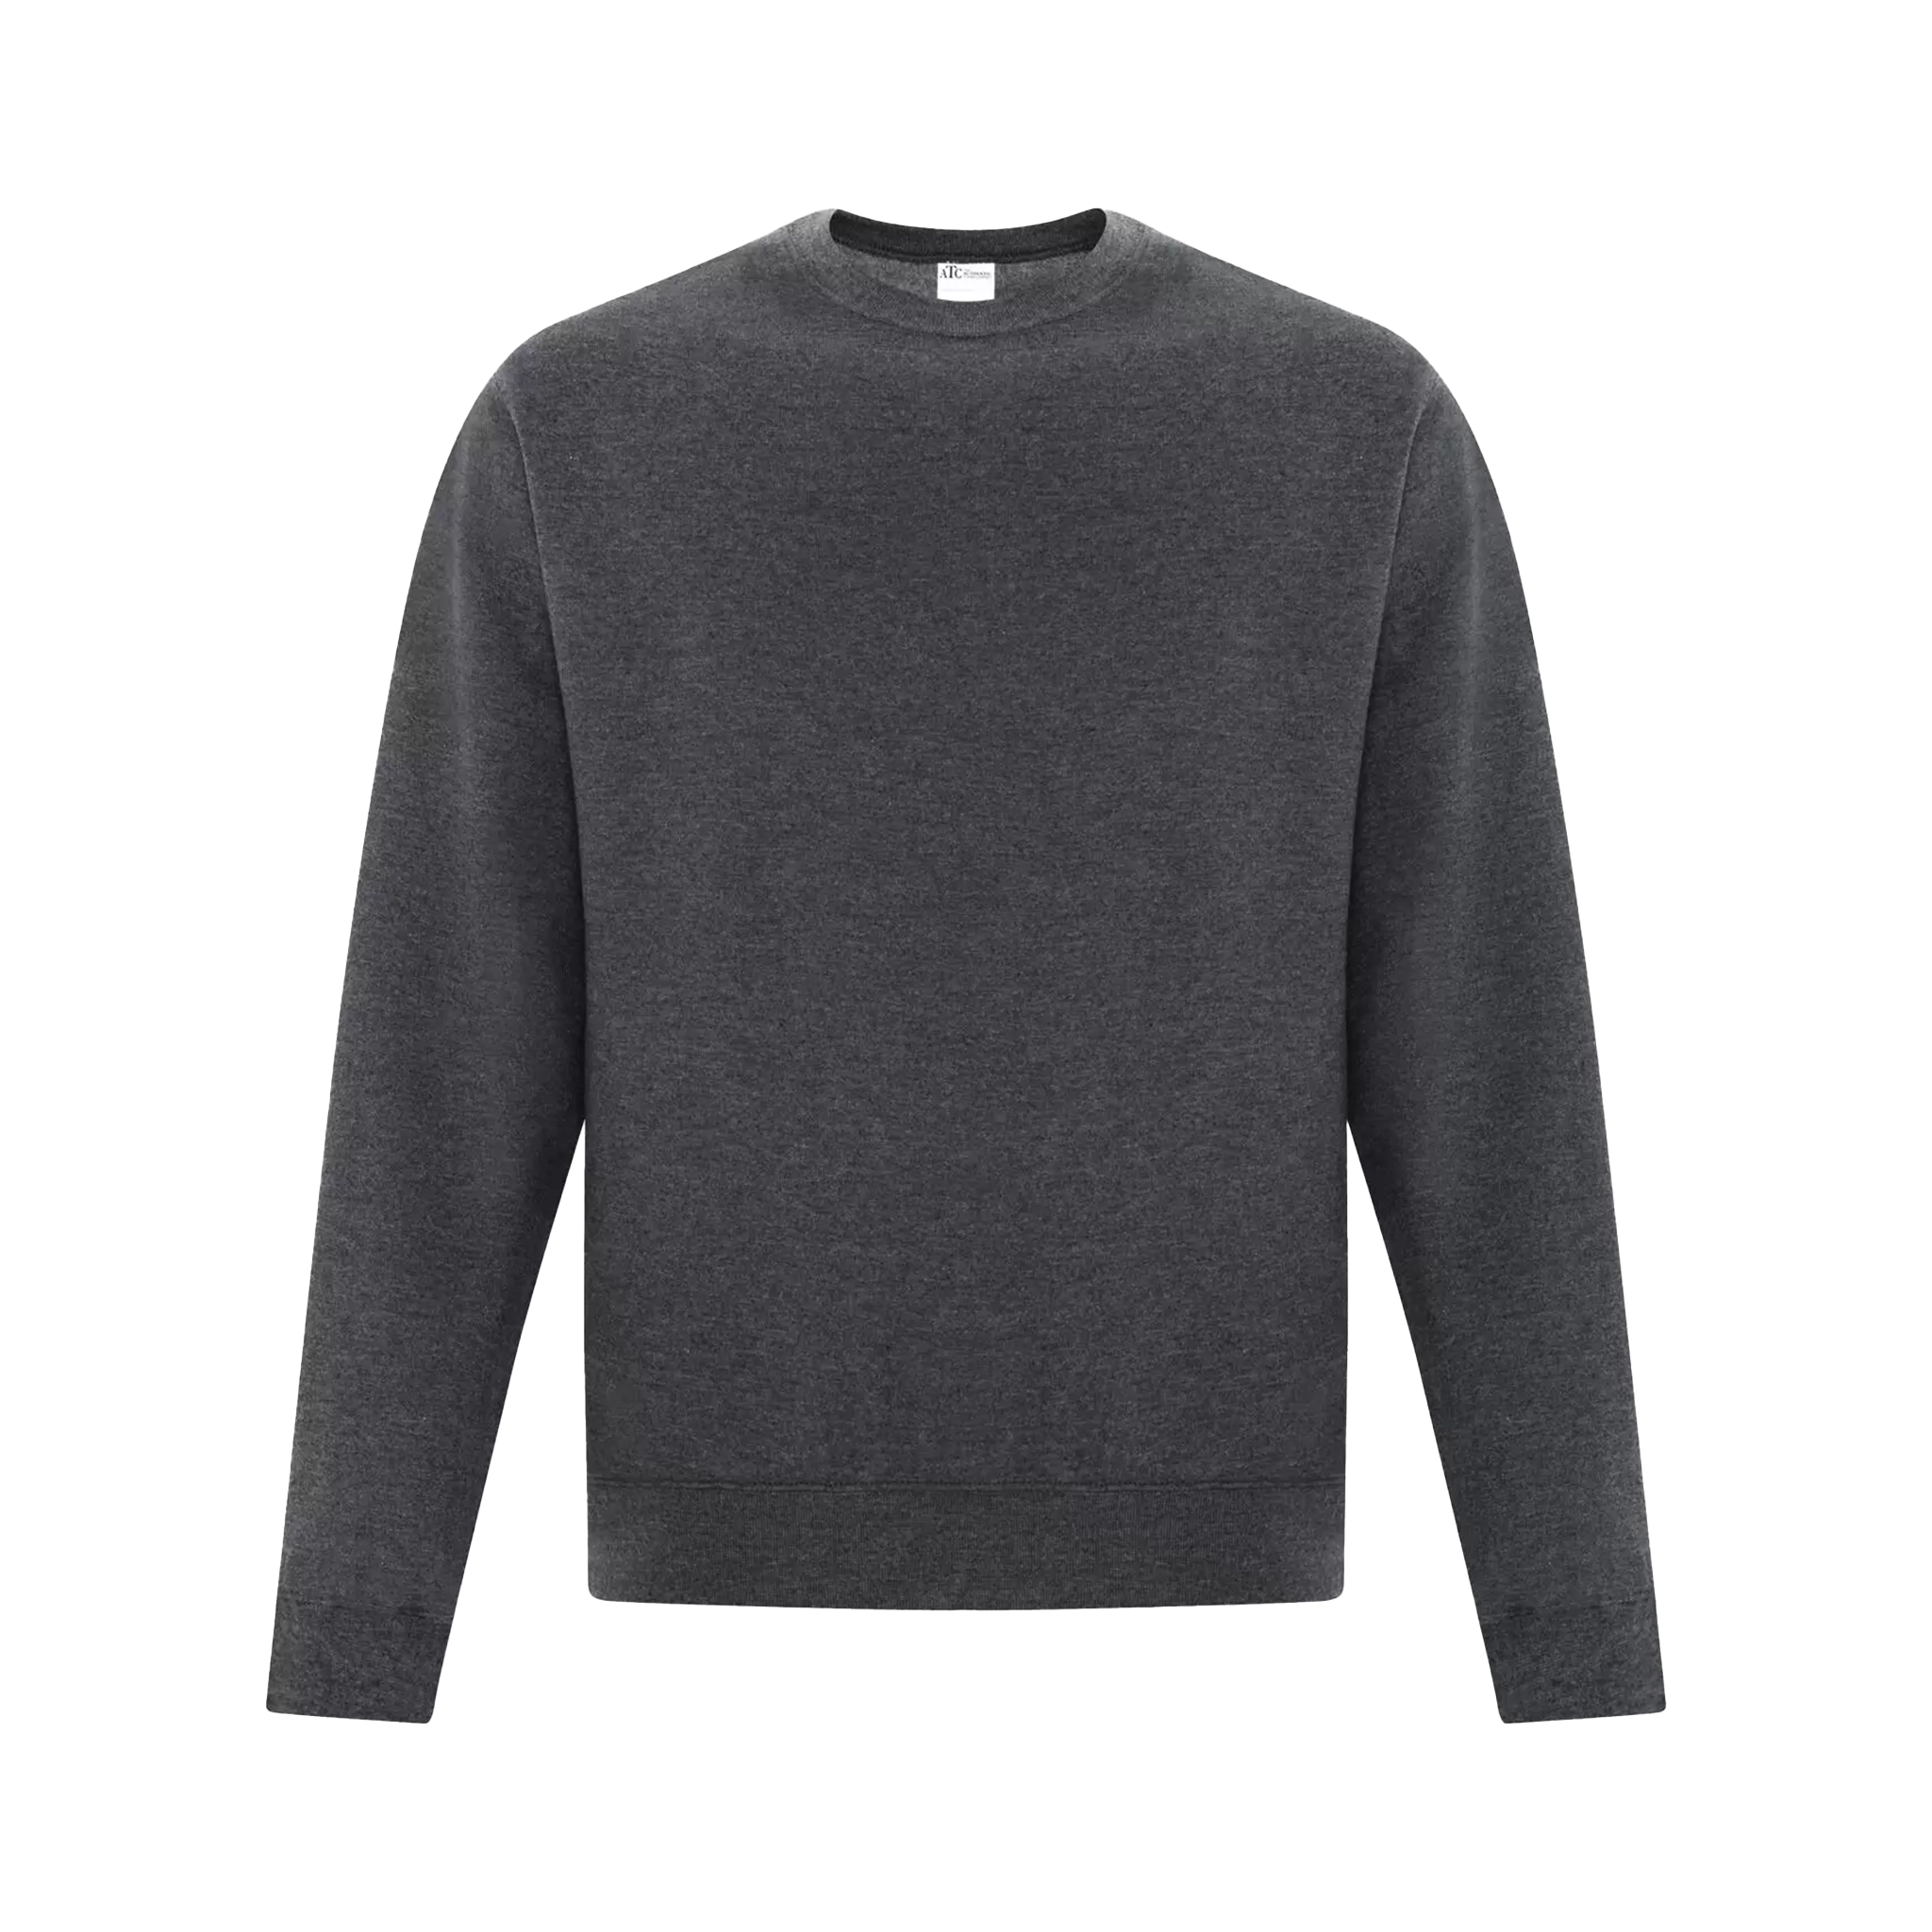 ATC Everyday Fleece Crewneck Sweatshirt - Adult Unisex Sizing S-4XL - Charcoal